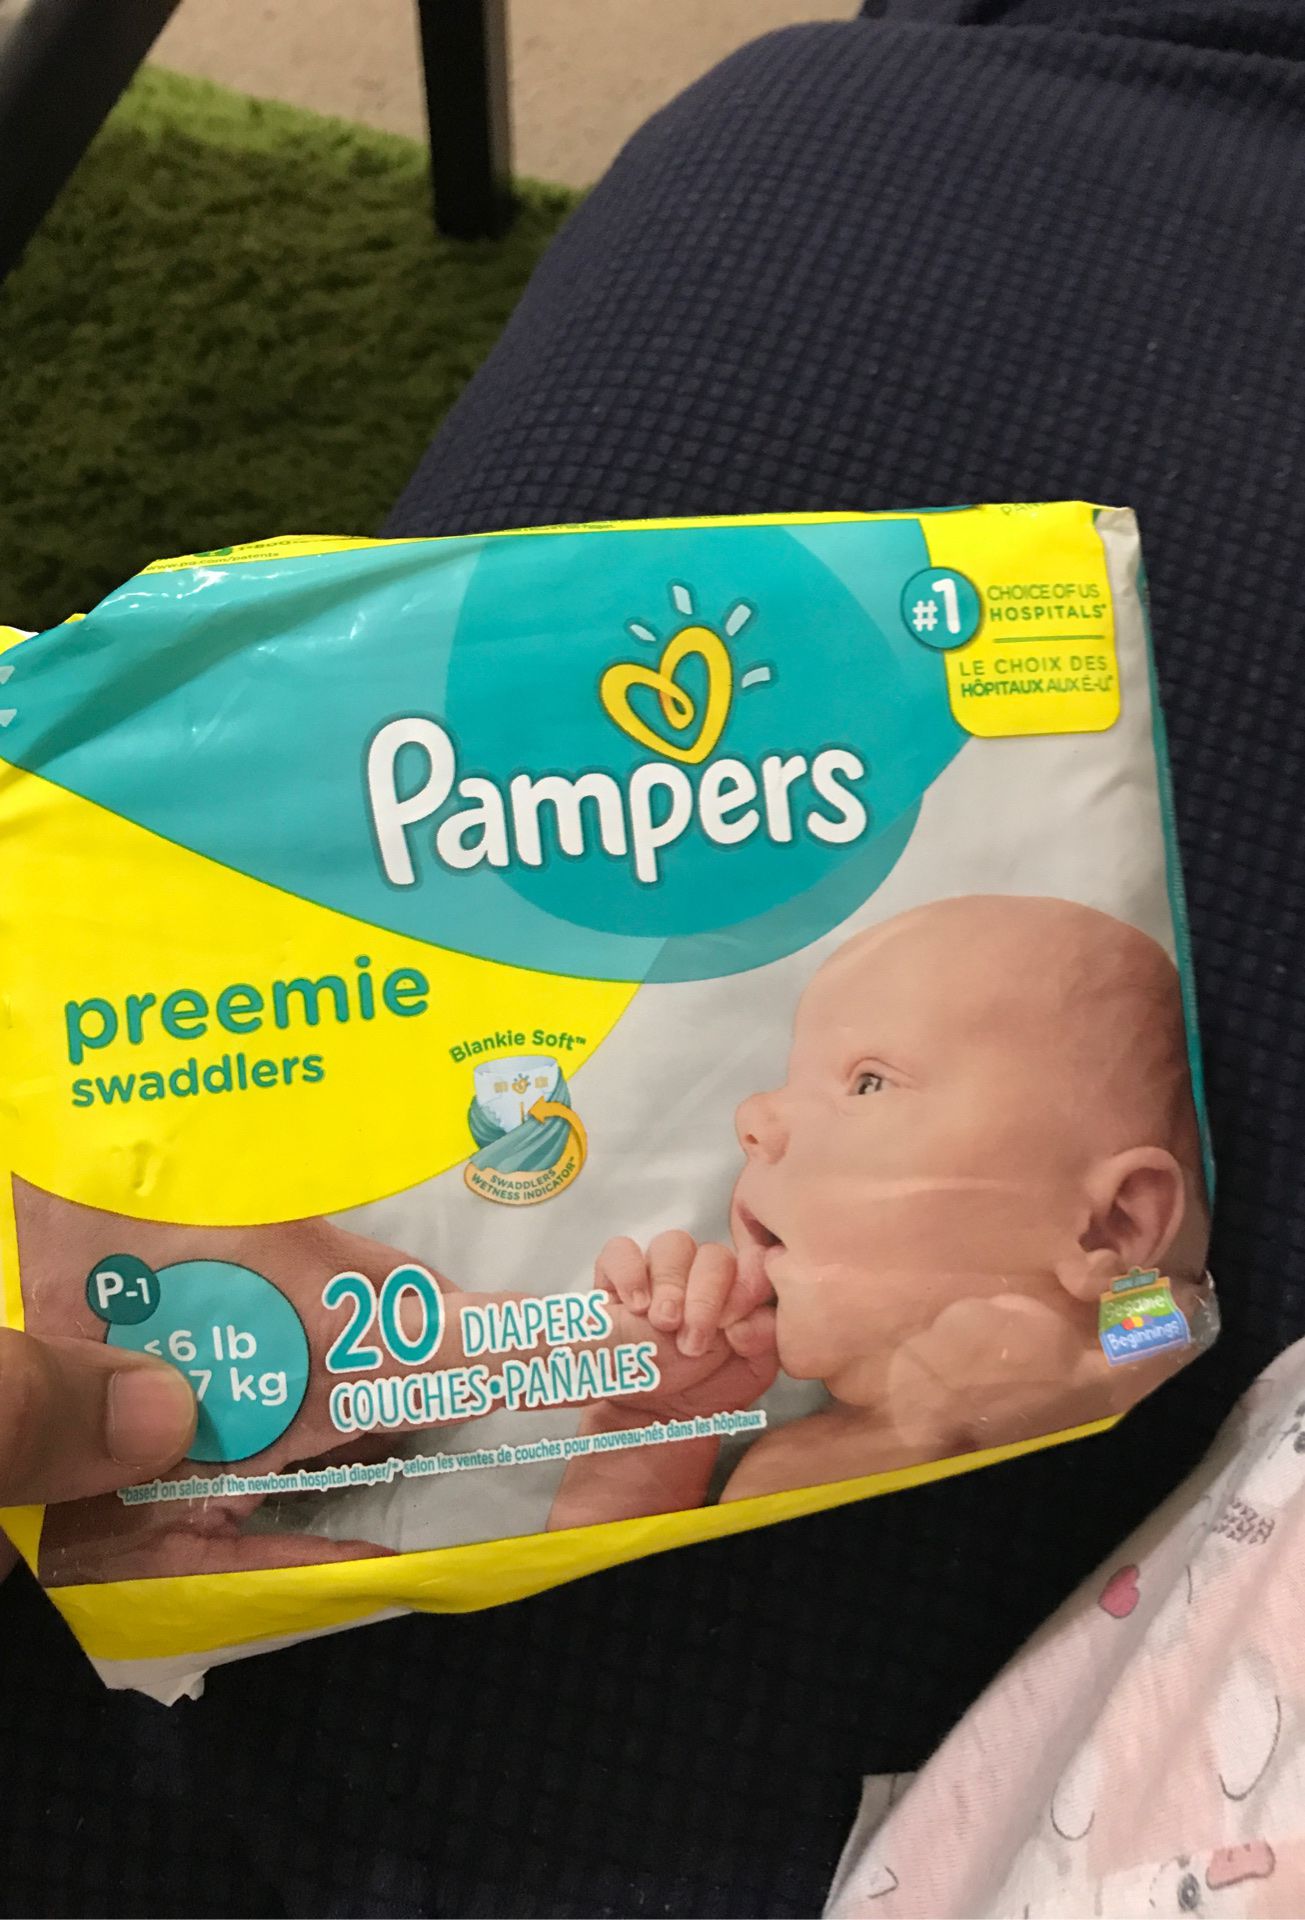 Unopened Pampers preemie diapers